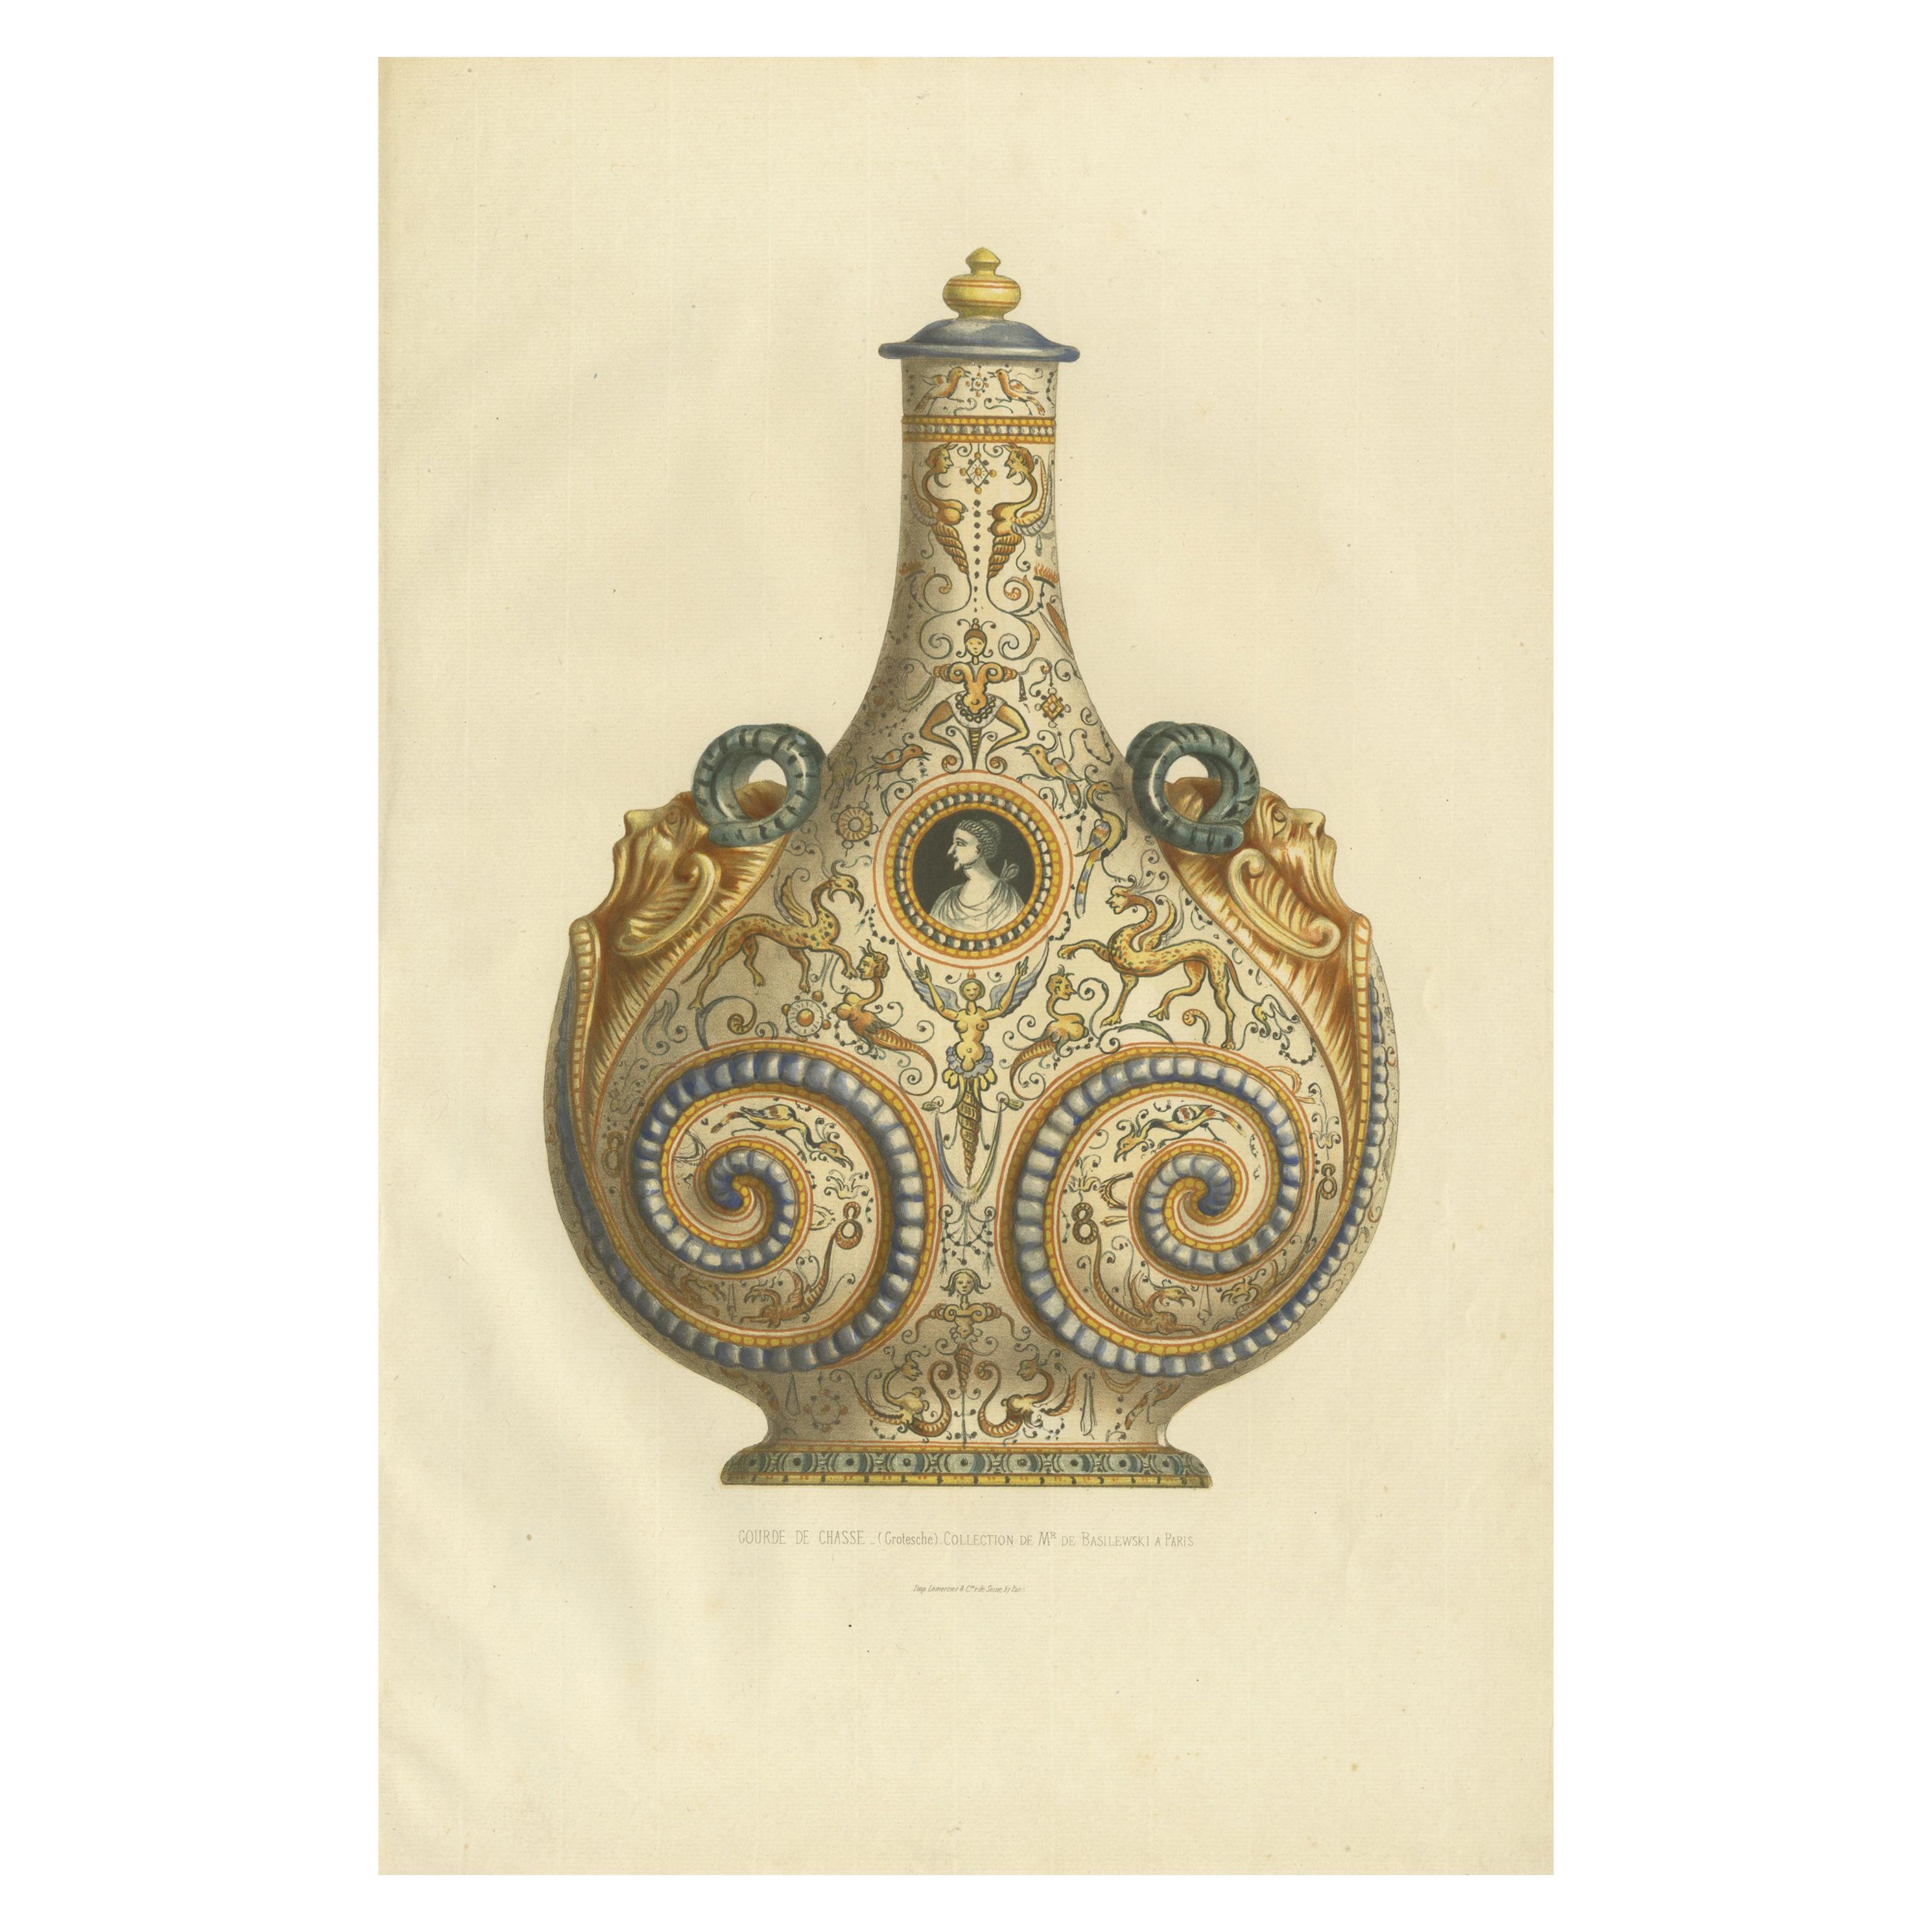 Magnifique impression décorative ancienne colorée à la main d'une gourde fabriquée en Italie en 1869